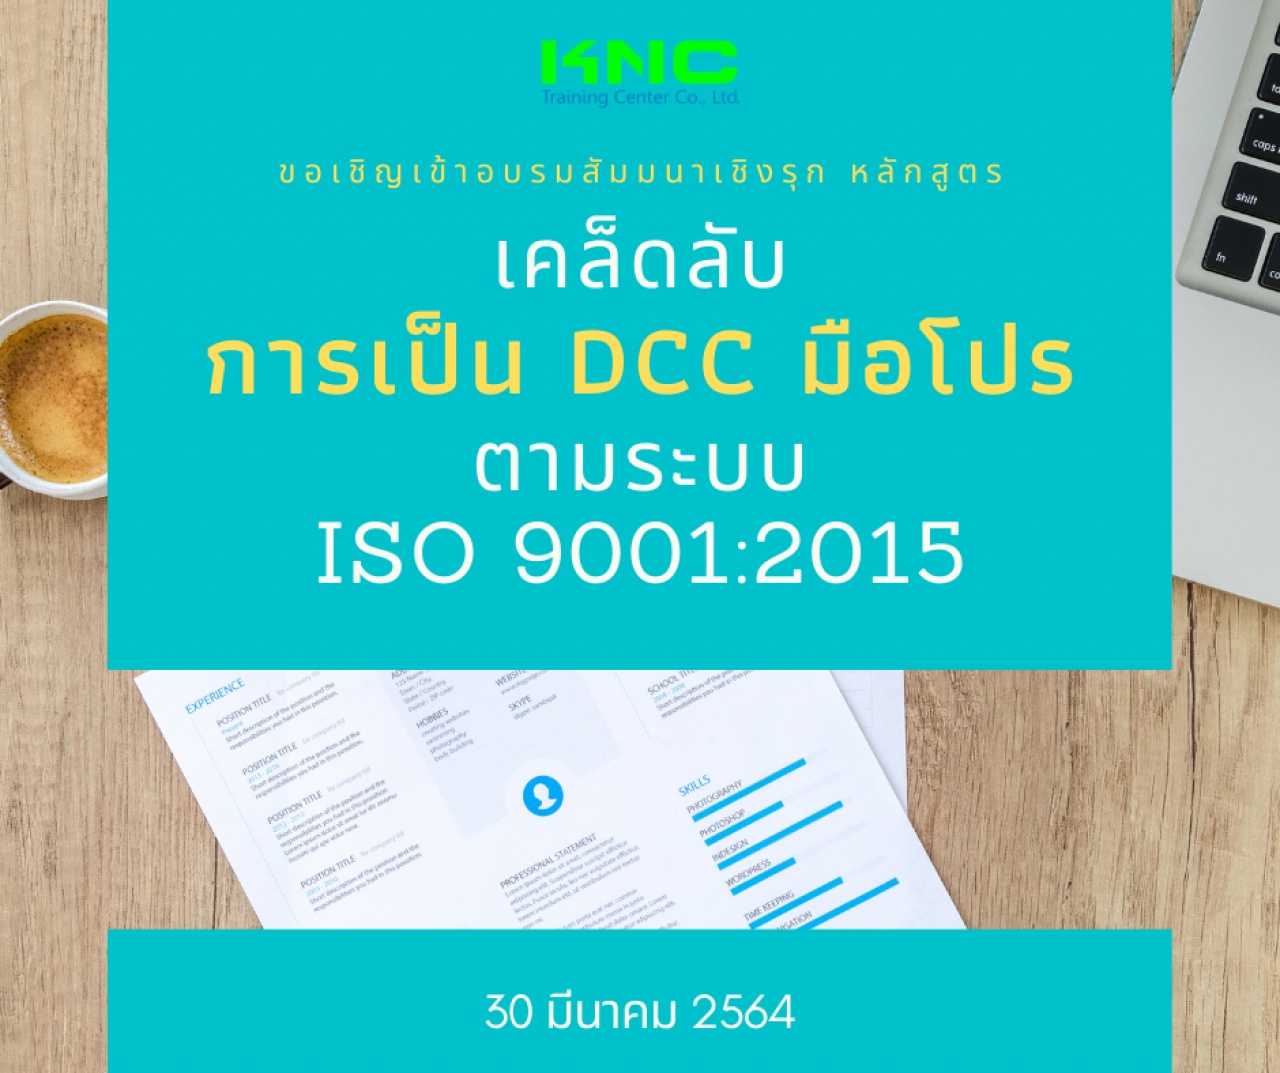 เคล็ดลับการเป็น DCC มือโปรตามระบบ ISO 9001:2015